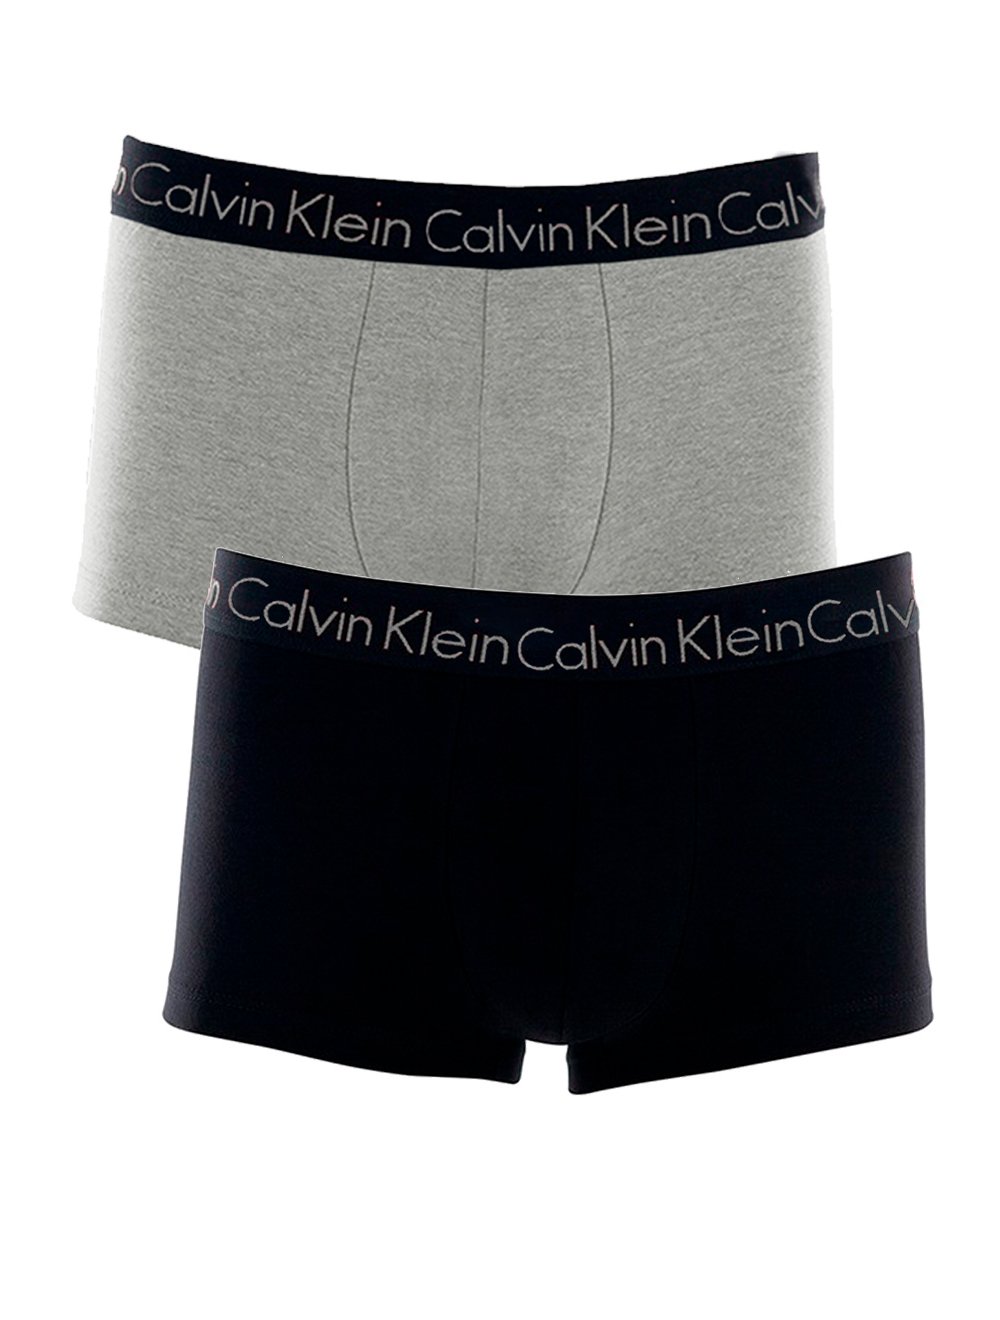 Calvin Klein CK One Mesh Brief White